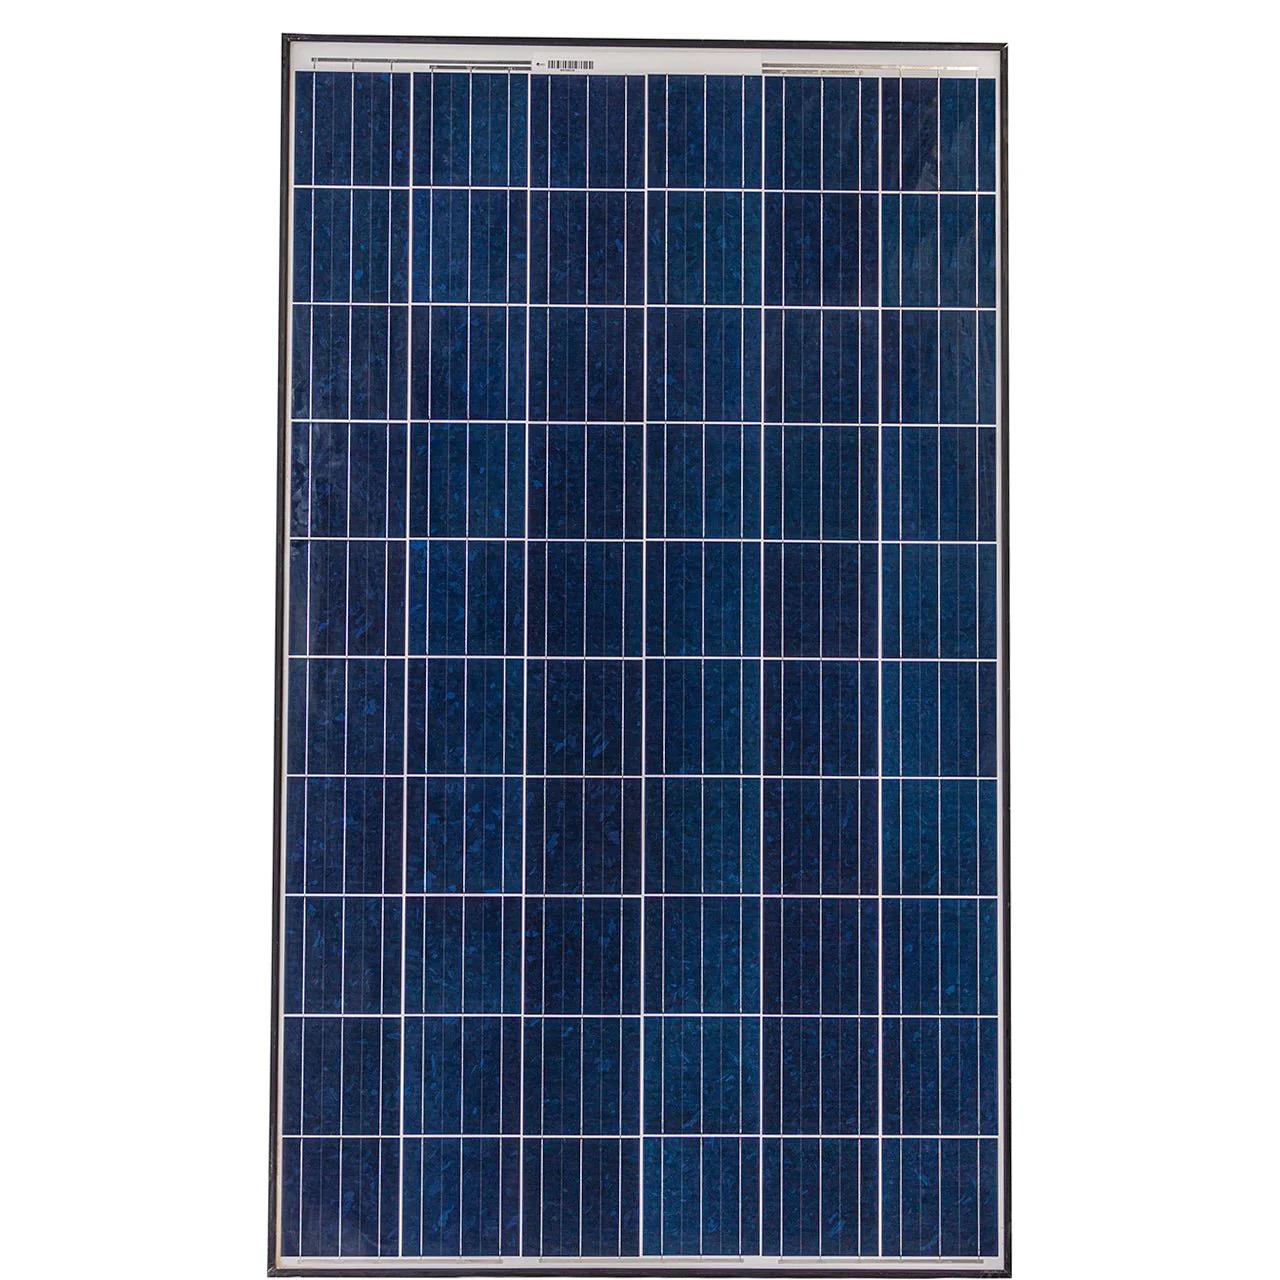 260 watt solar panel - How many volts does A 260 watt solar panel produce